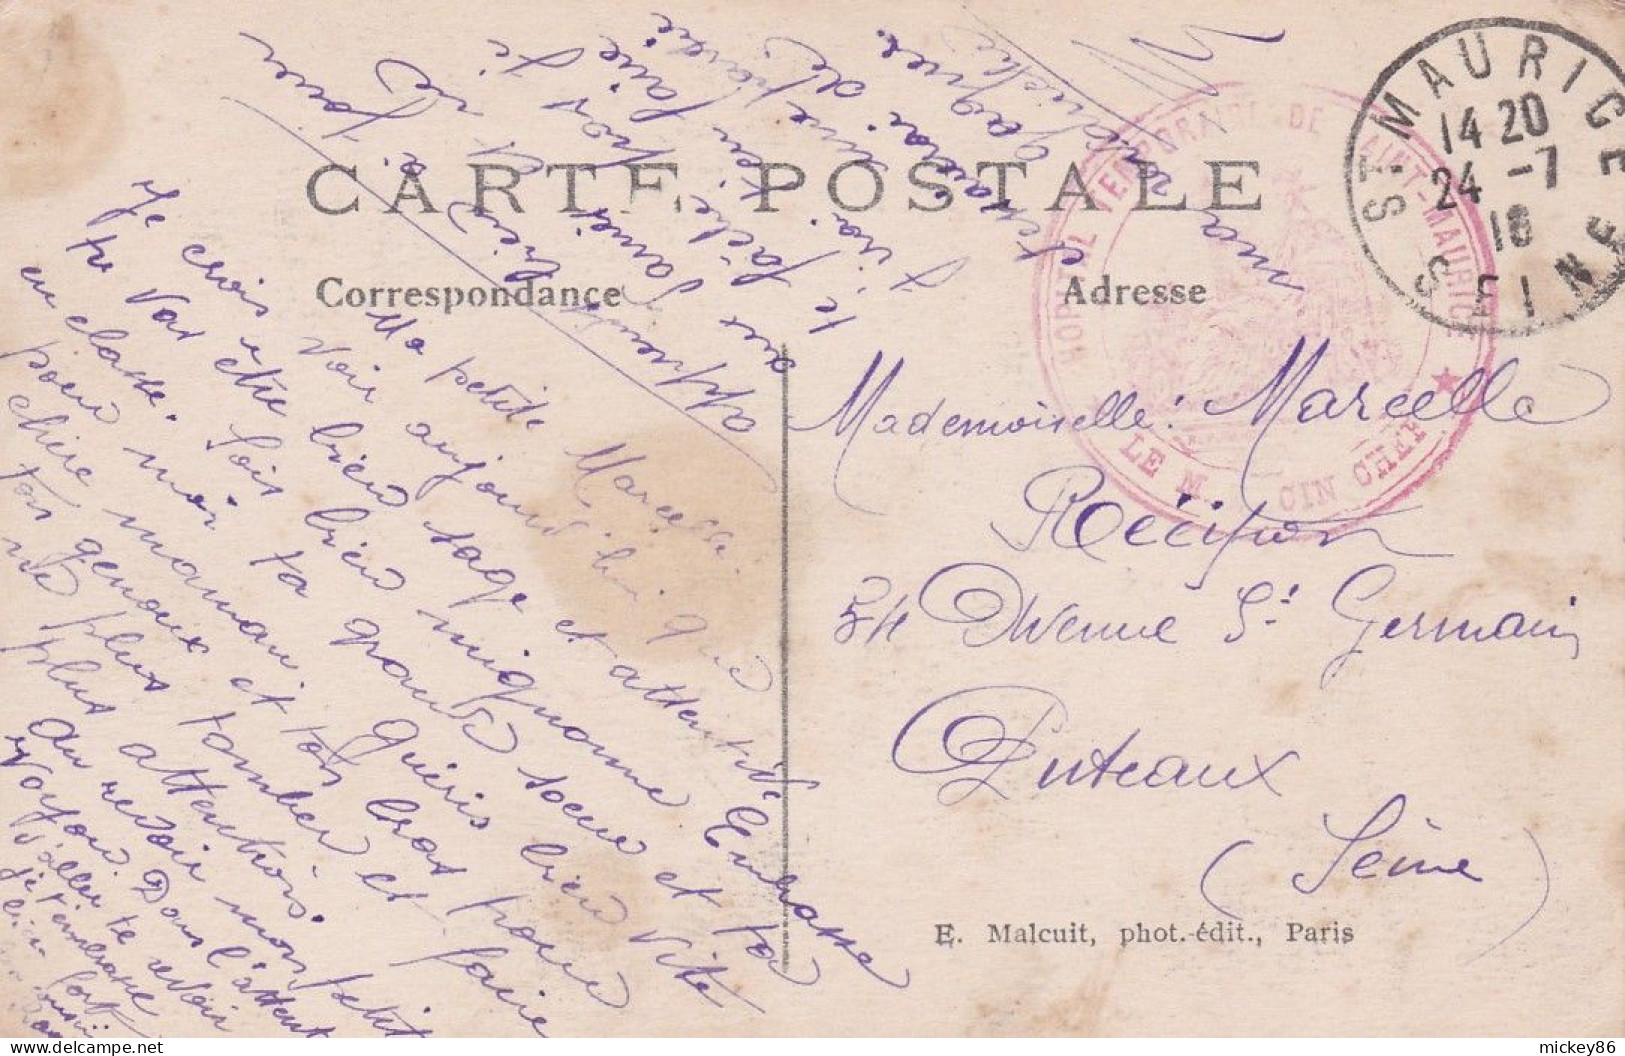 PARIS 12°--1916--Bois De Vincennes --Lac Daumesnil--Le Pont Des Iles --cachet  St MAURICE - Arrondissement: 12